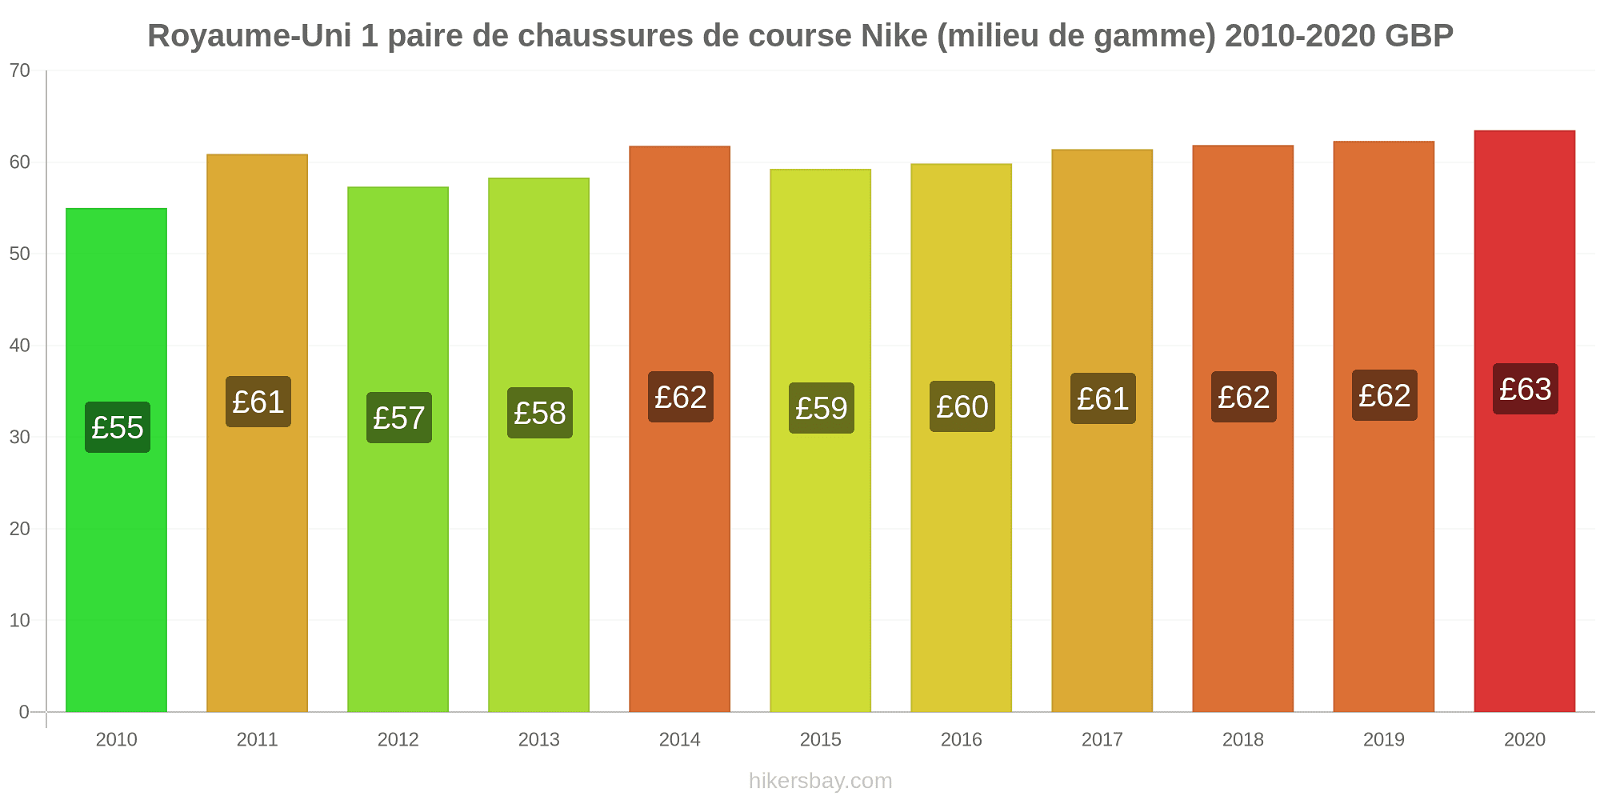 Royaume-Uni changements de prix 1 paire de chaussures de course Nike (milieu de gamme) hikersbay.com